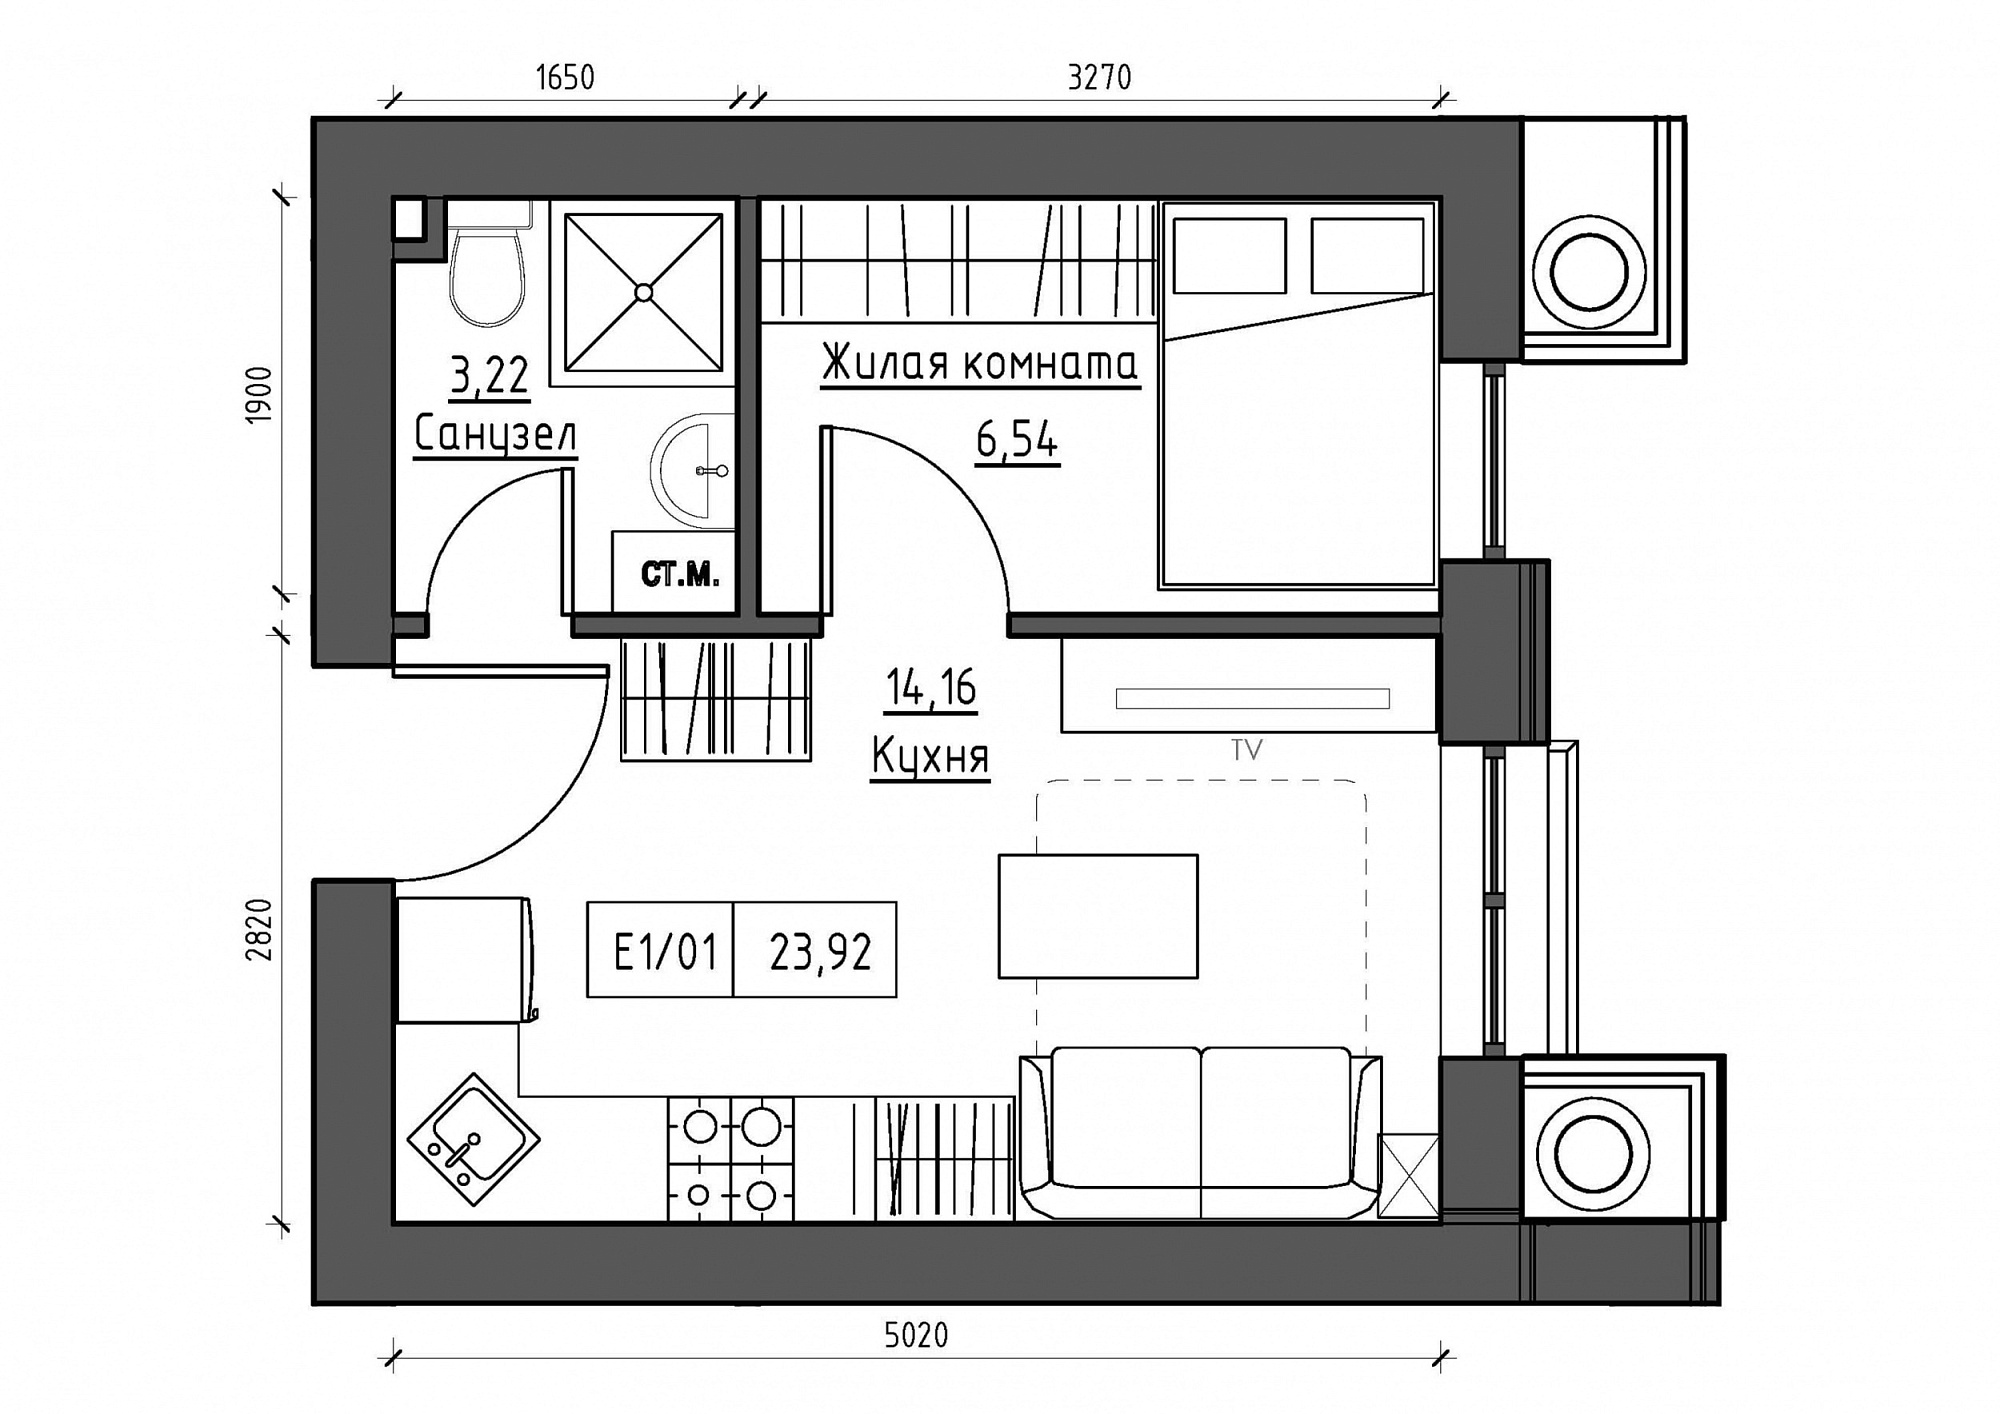 Планування 1-к квартира площею 23.92м2, KS-011-05/0004.